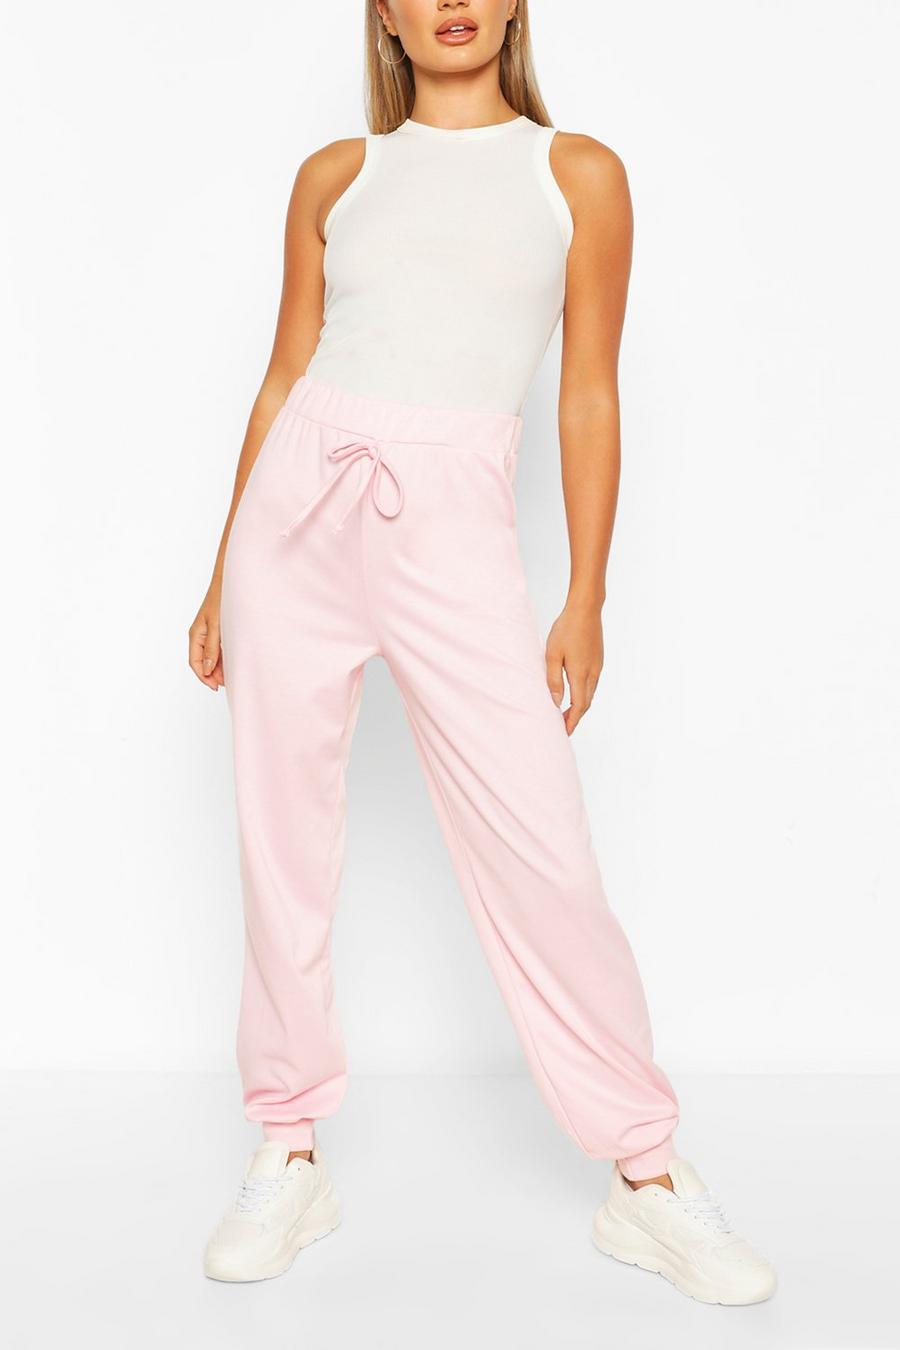 Pantalones de correr casuales, sueltos y ligeros, Baby pink image number 1